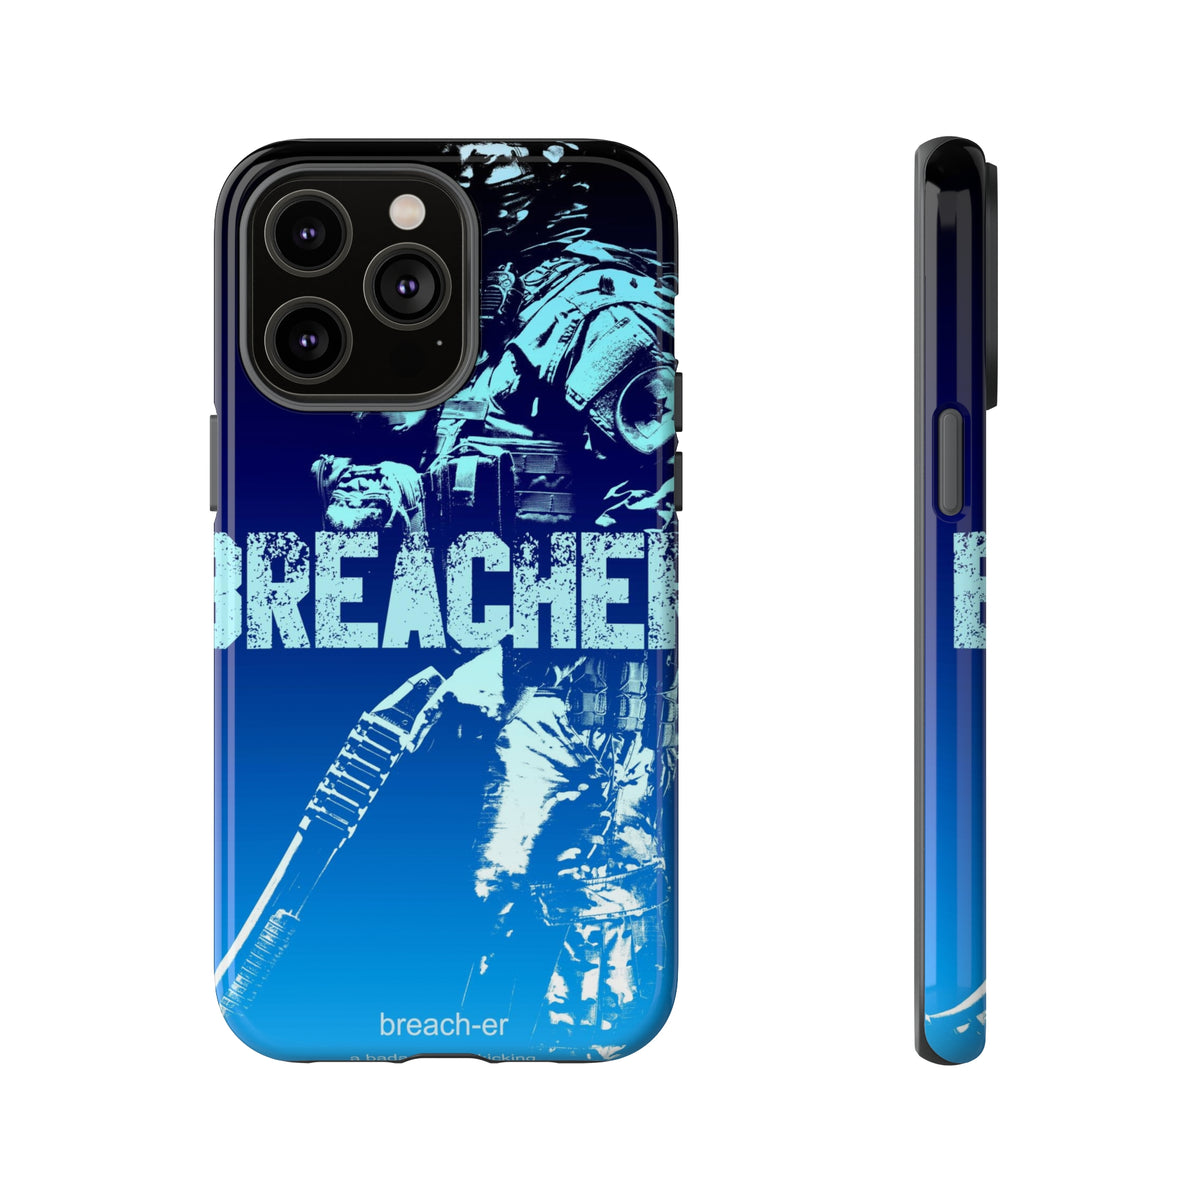 Breacher Tough Phone Case